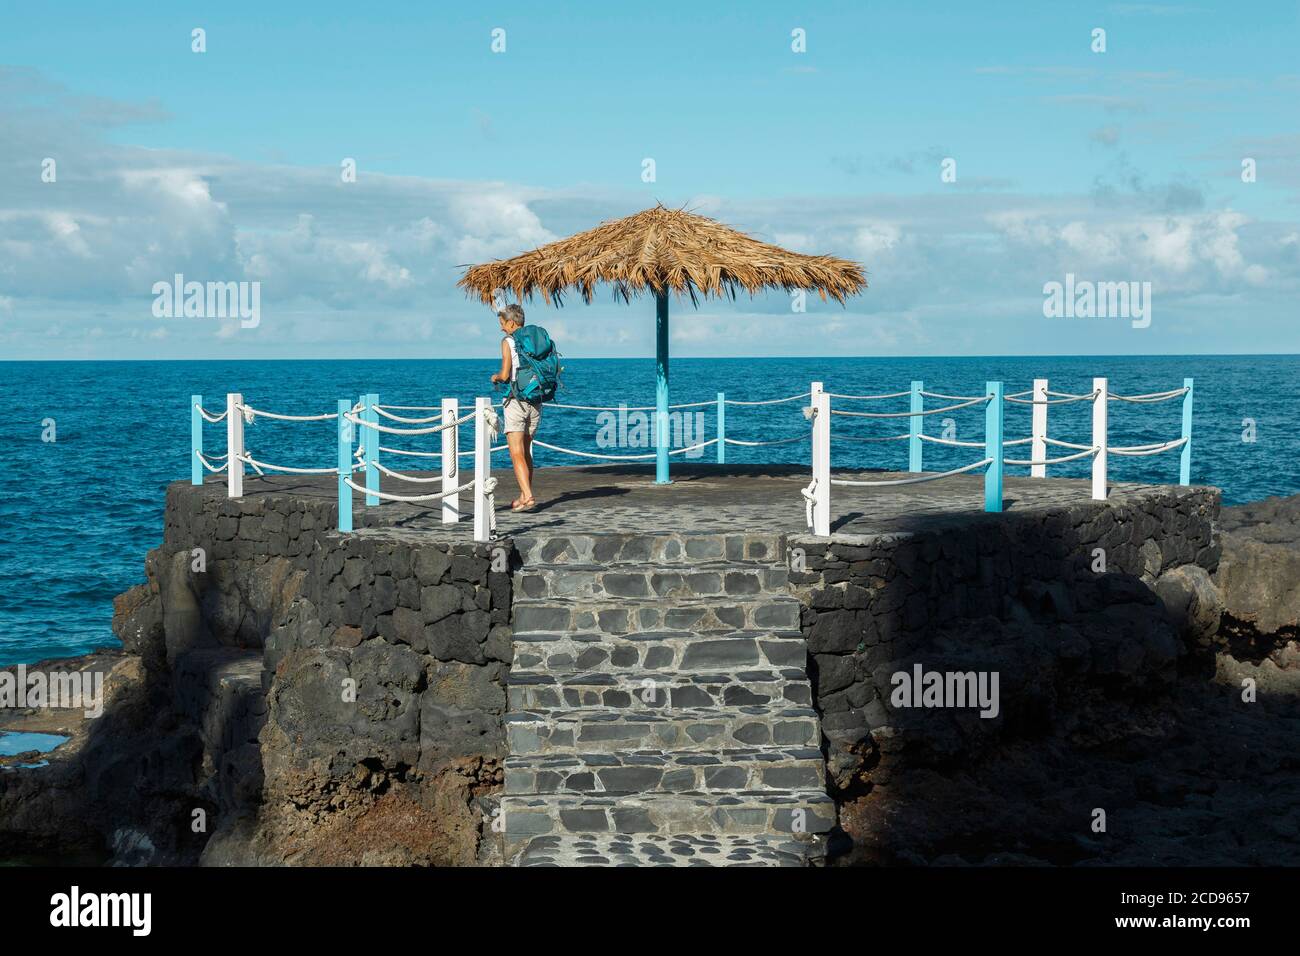 Espagne, Iles Canaries, la Palma, randonneur touristique sur une terrasse au bord de la mer Banque D'Images